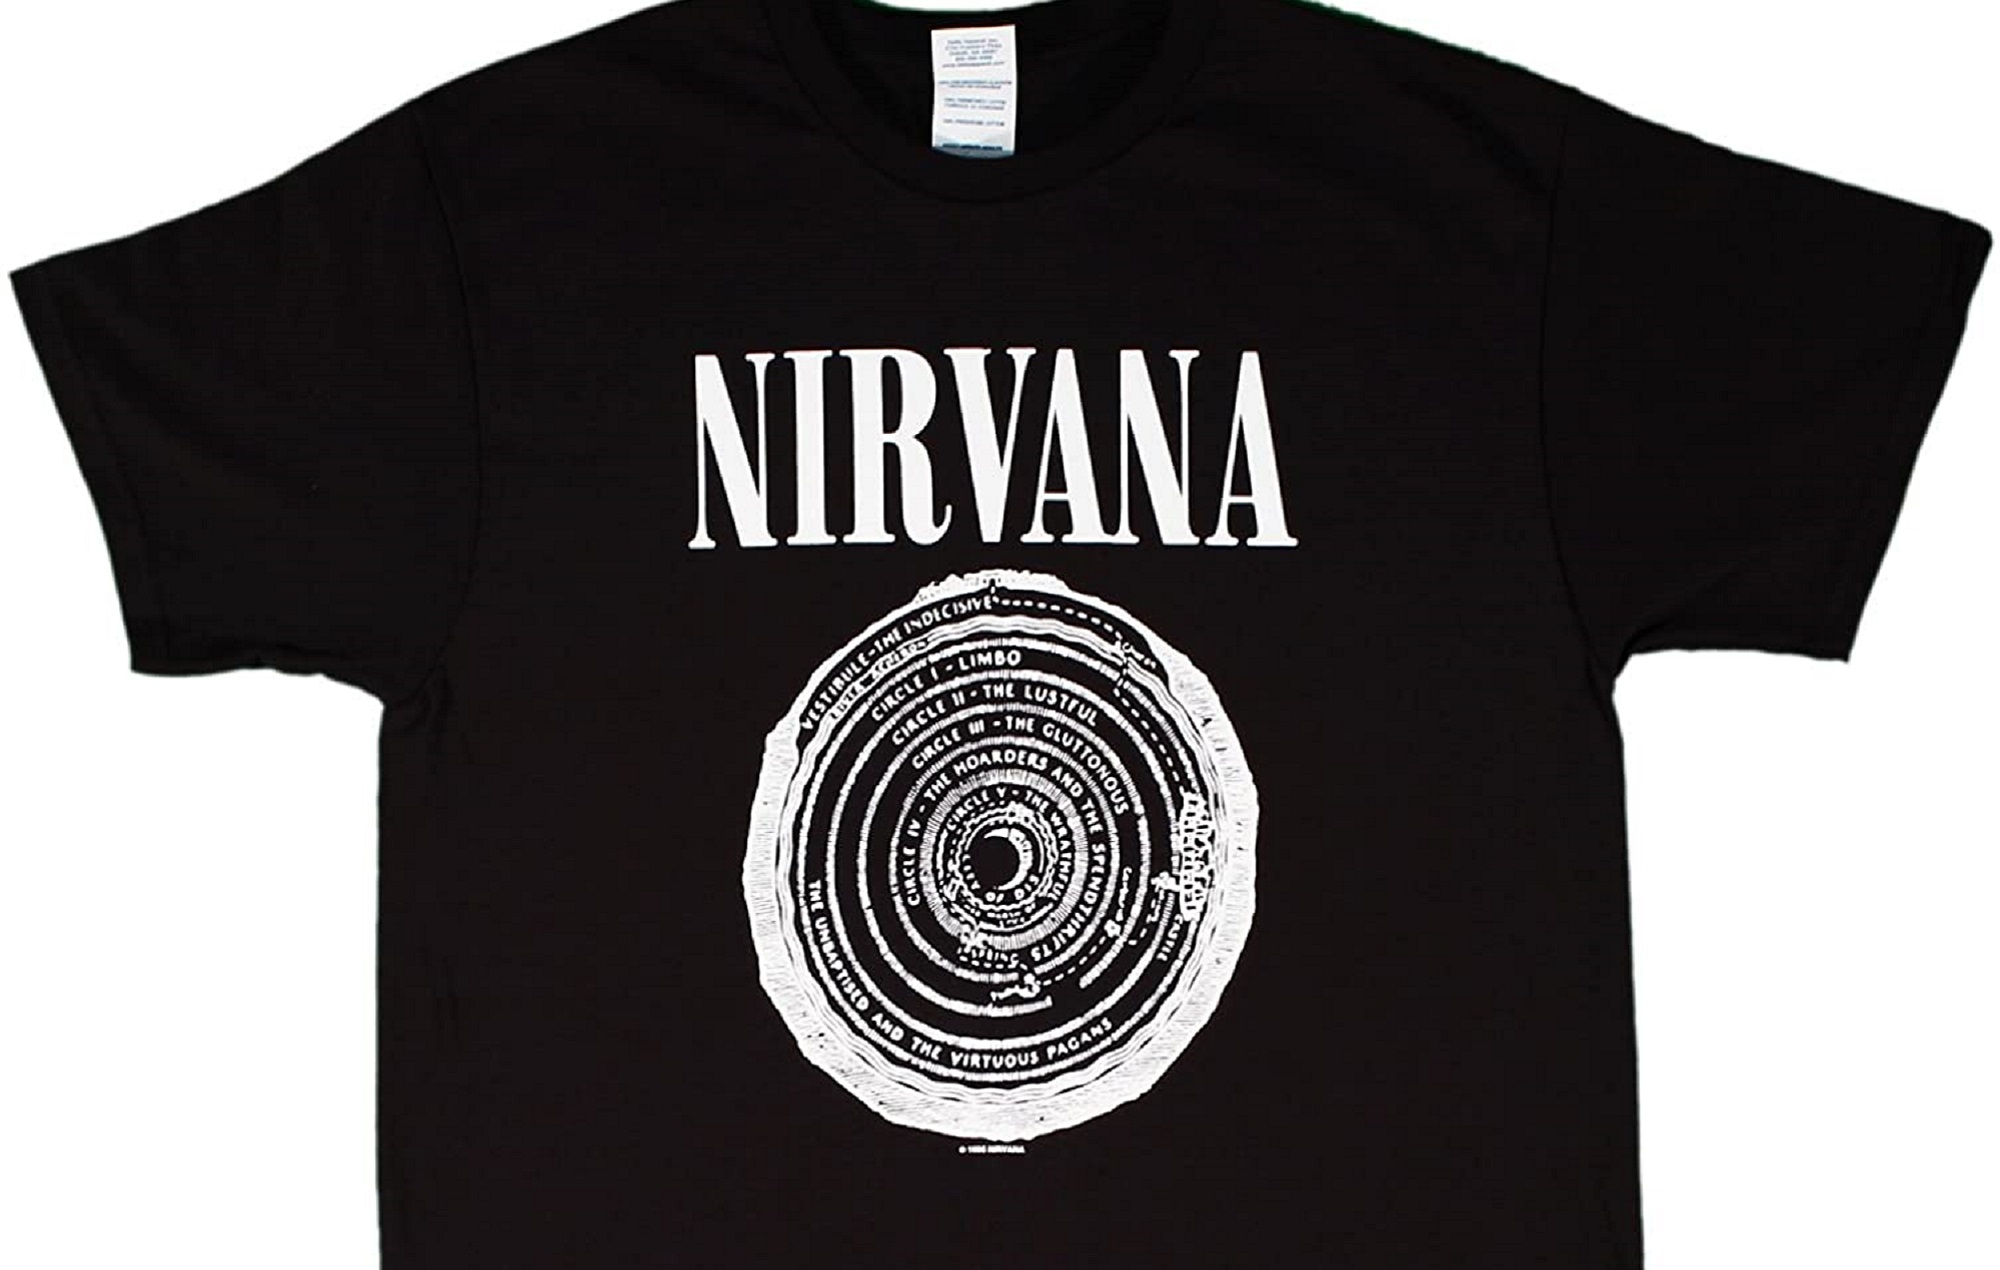 Та самая футболка Nirvana с кругами Ада из «Божественной комедии» Данте